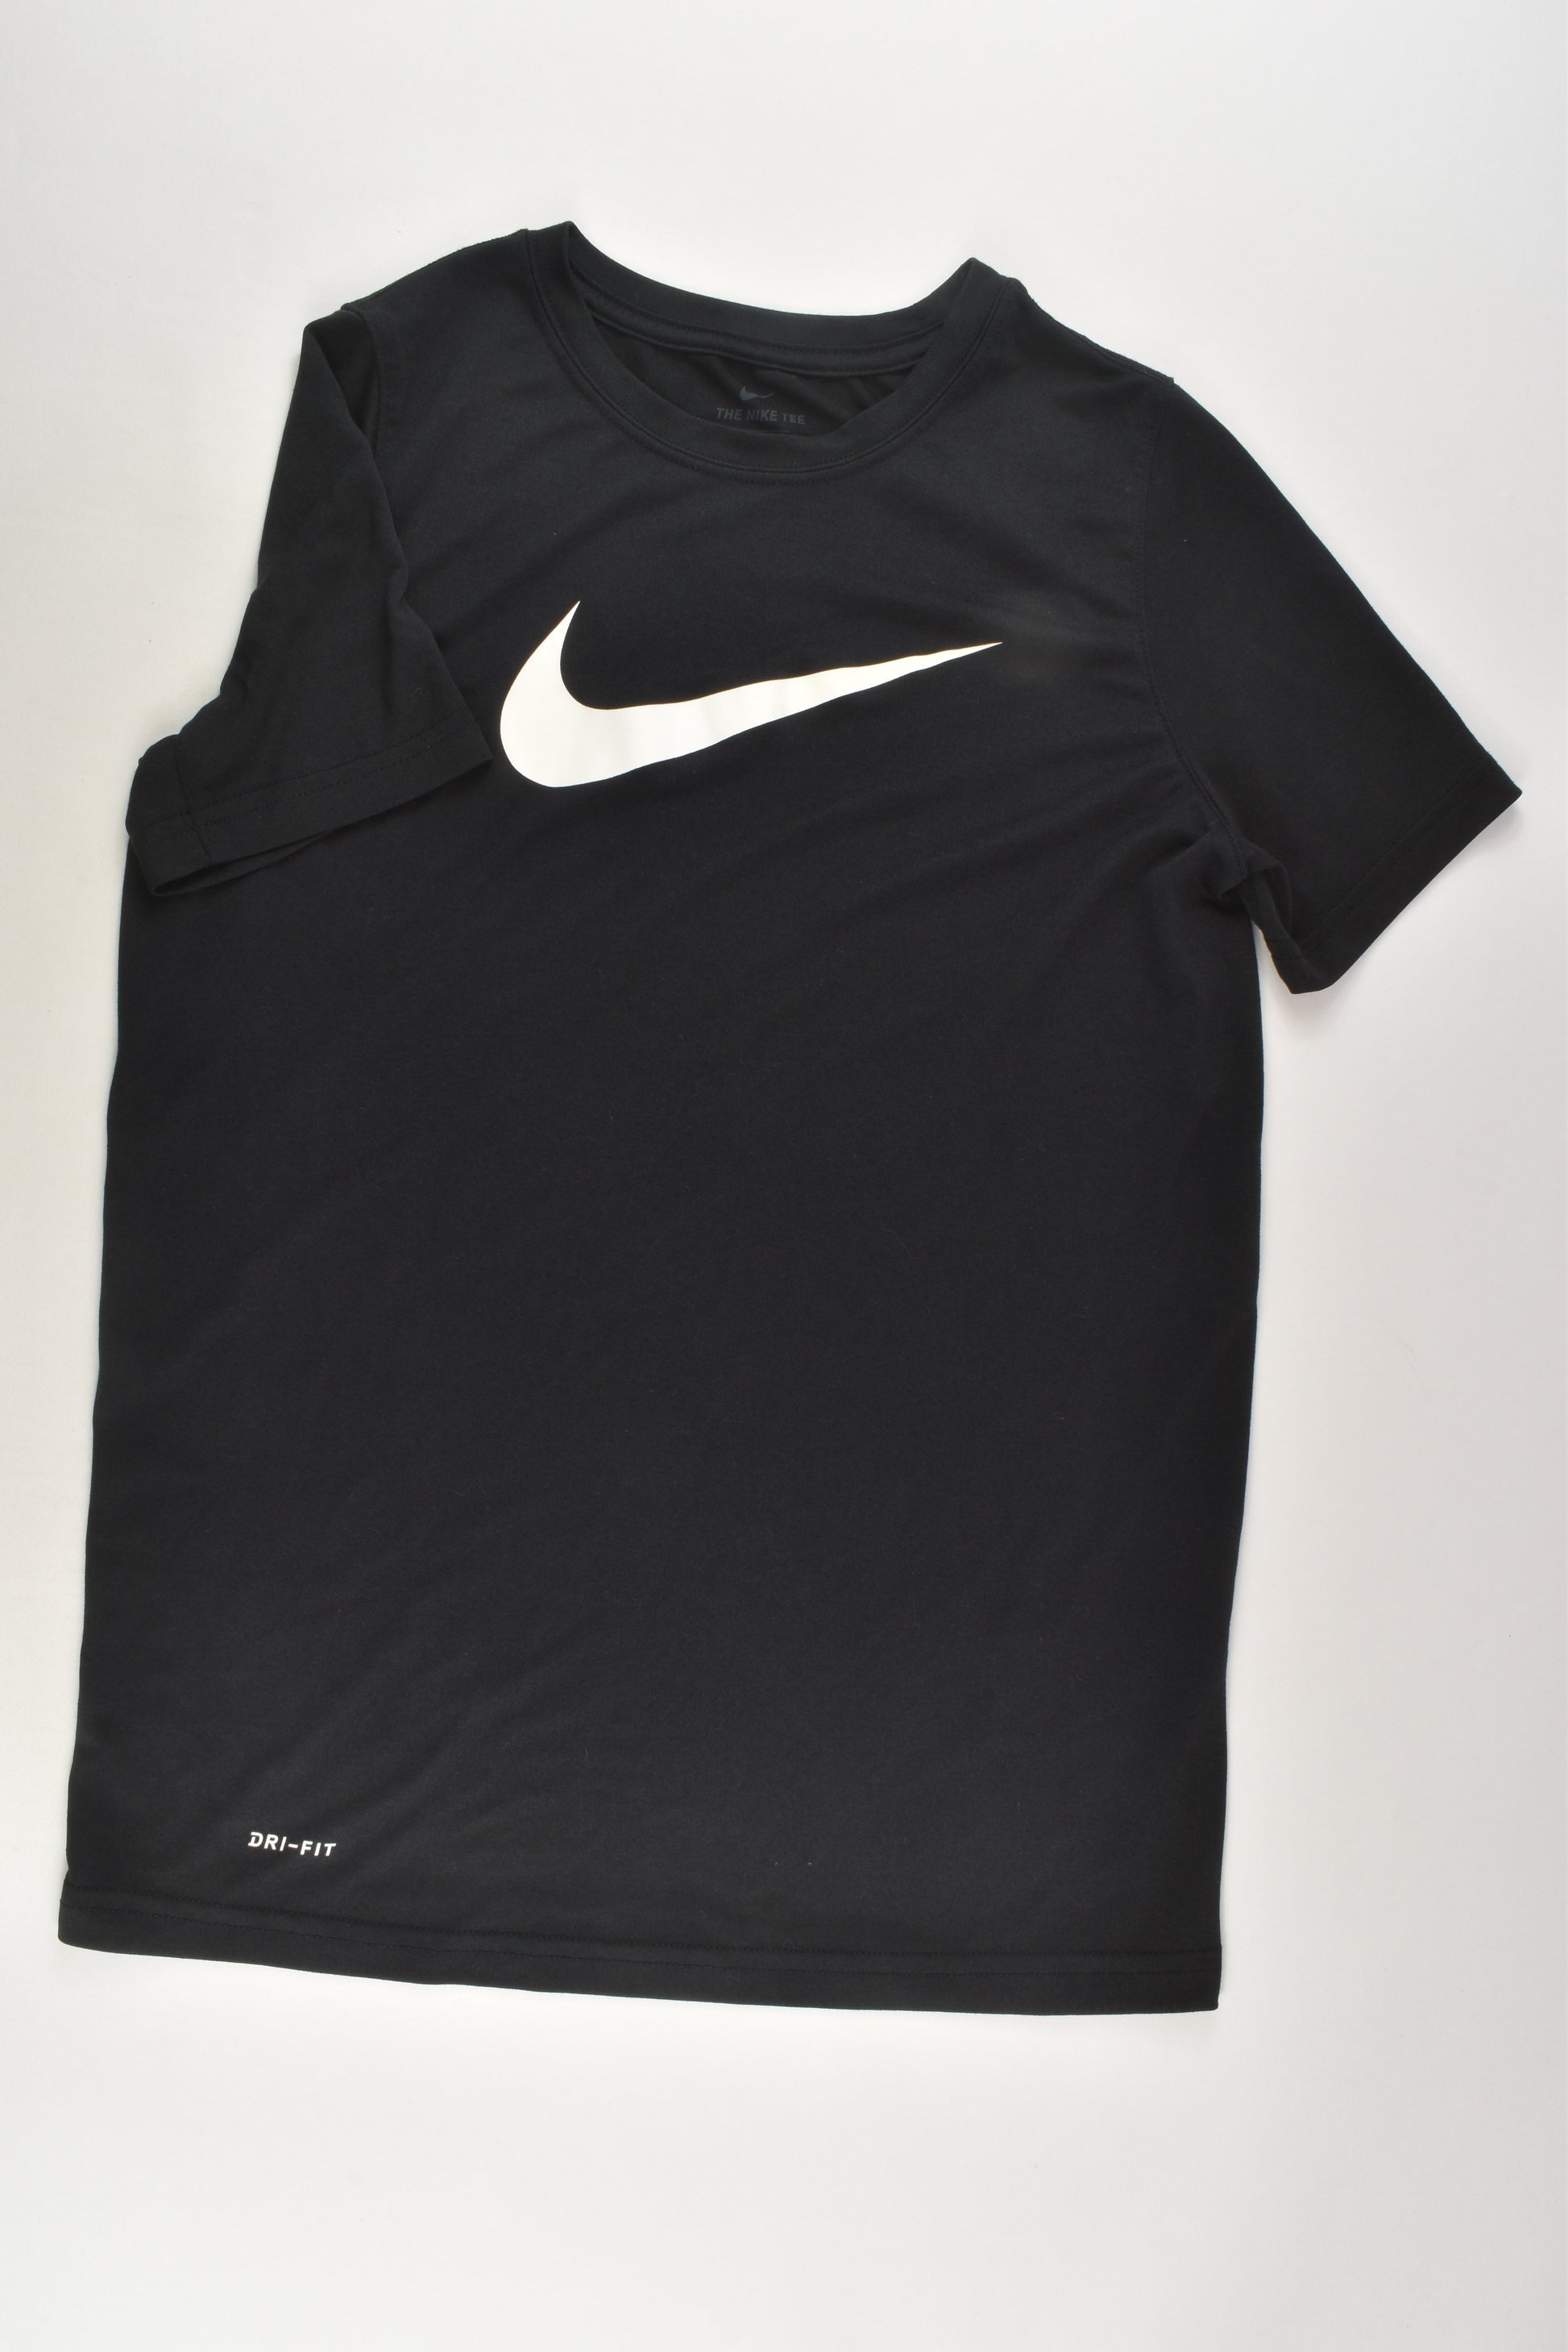 Nike Size 12-13 (L) Dri-Fit Sport T-shirt